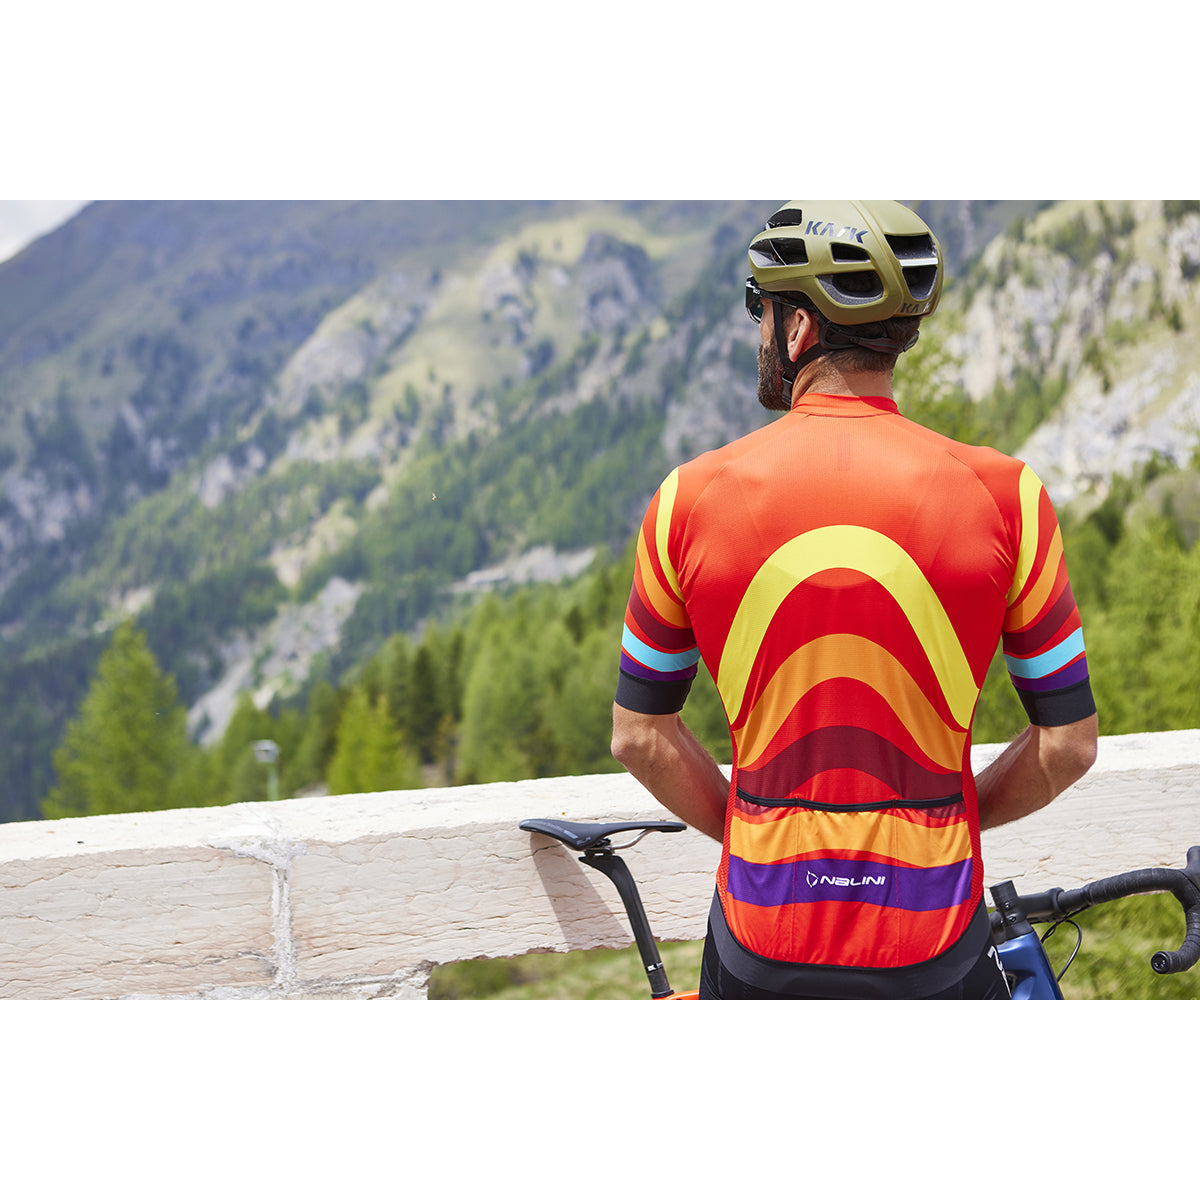 Nalini STRIPES Men's Cycling Jersey (Orange/Multi) S, M, L, XL, 2XL, 4XL